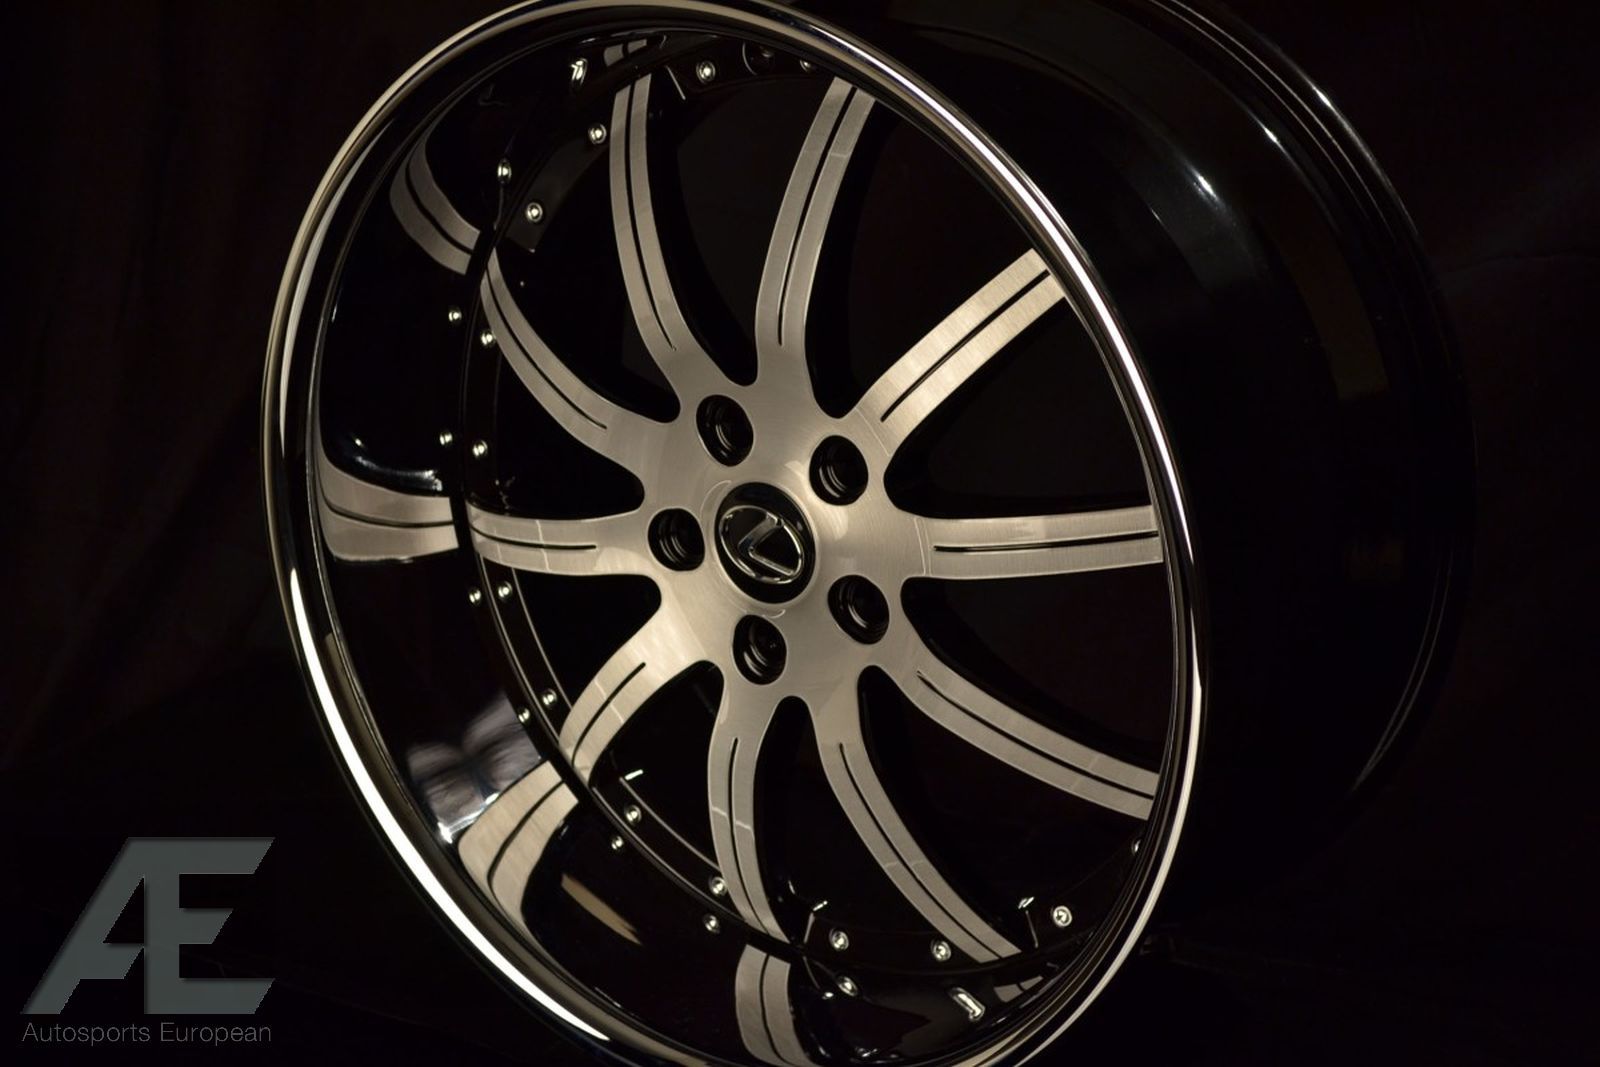 19 Lexus Wheels Rims Tires ES300 ES330 ES350 IS250 IS300 is350 IS430